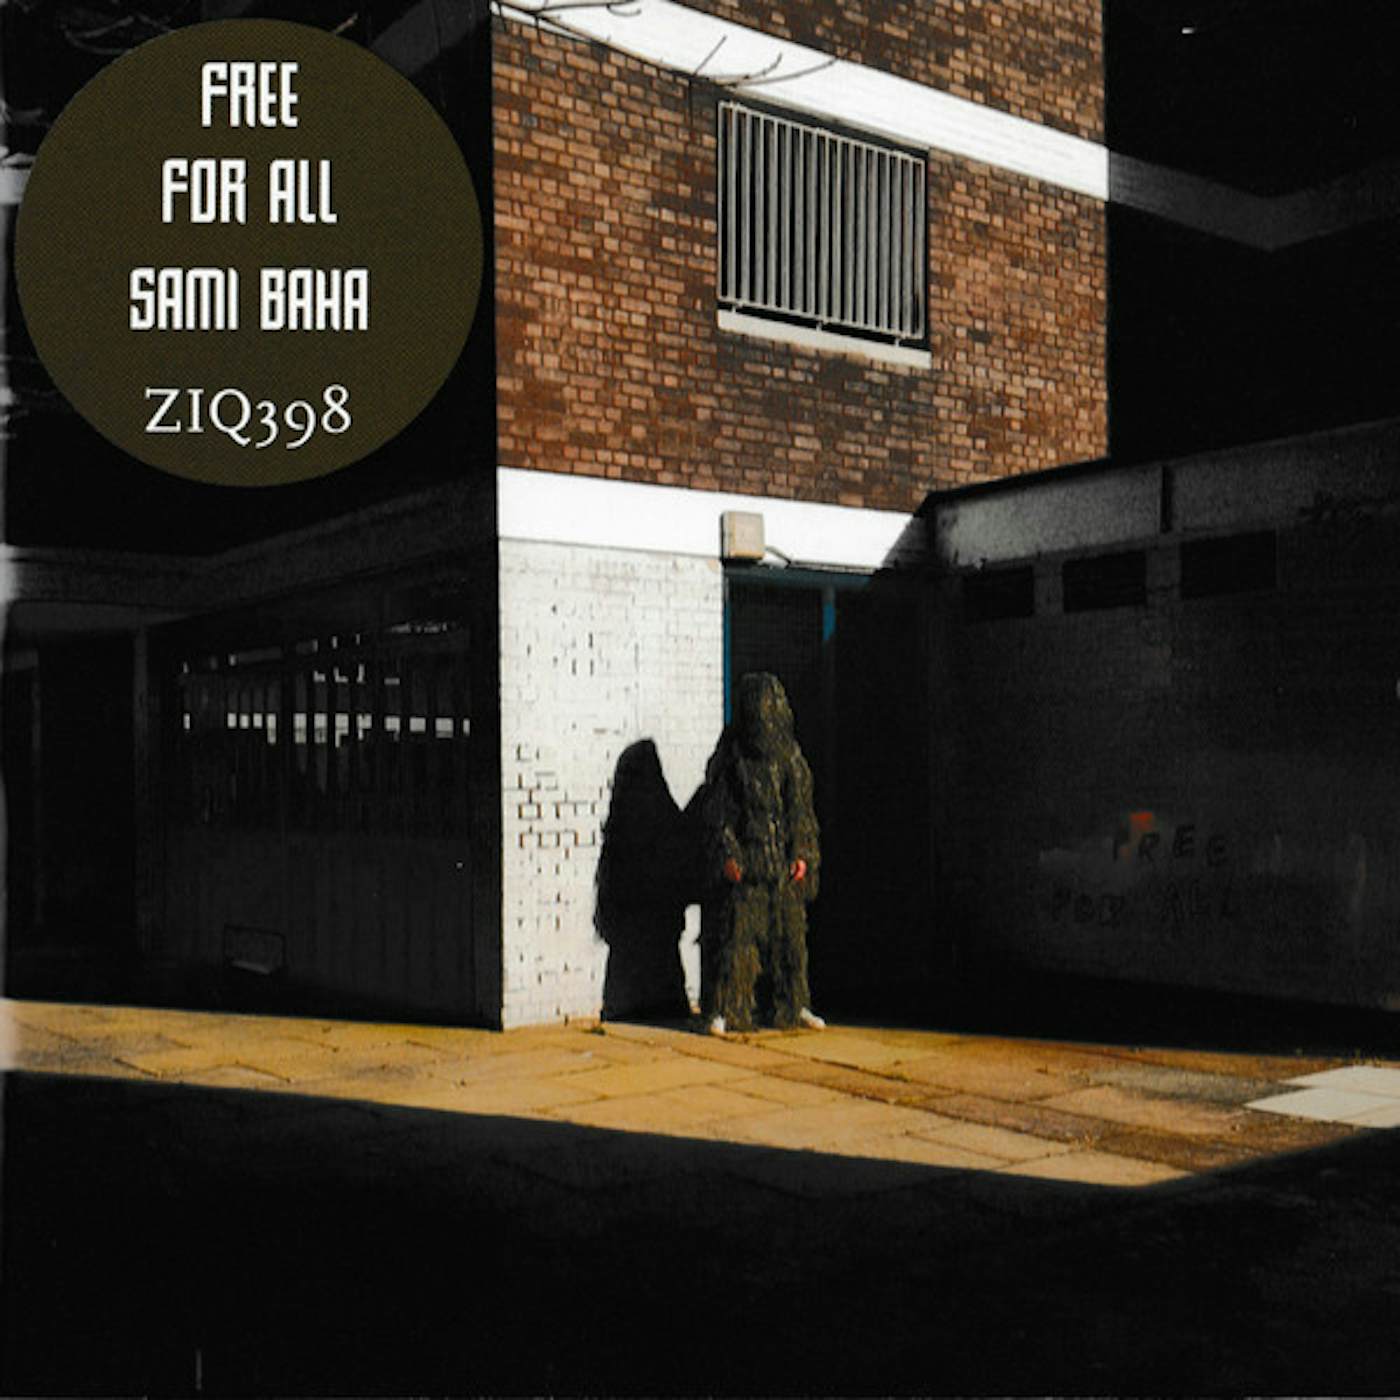 Sami Baha Free For All Vinyl Record